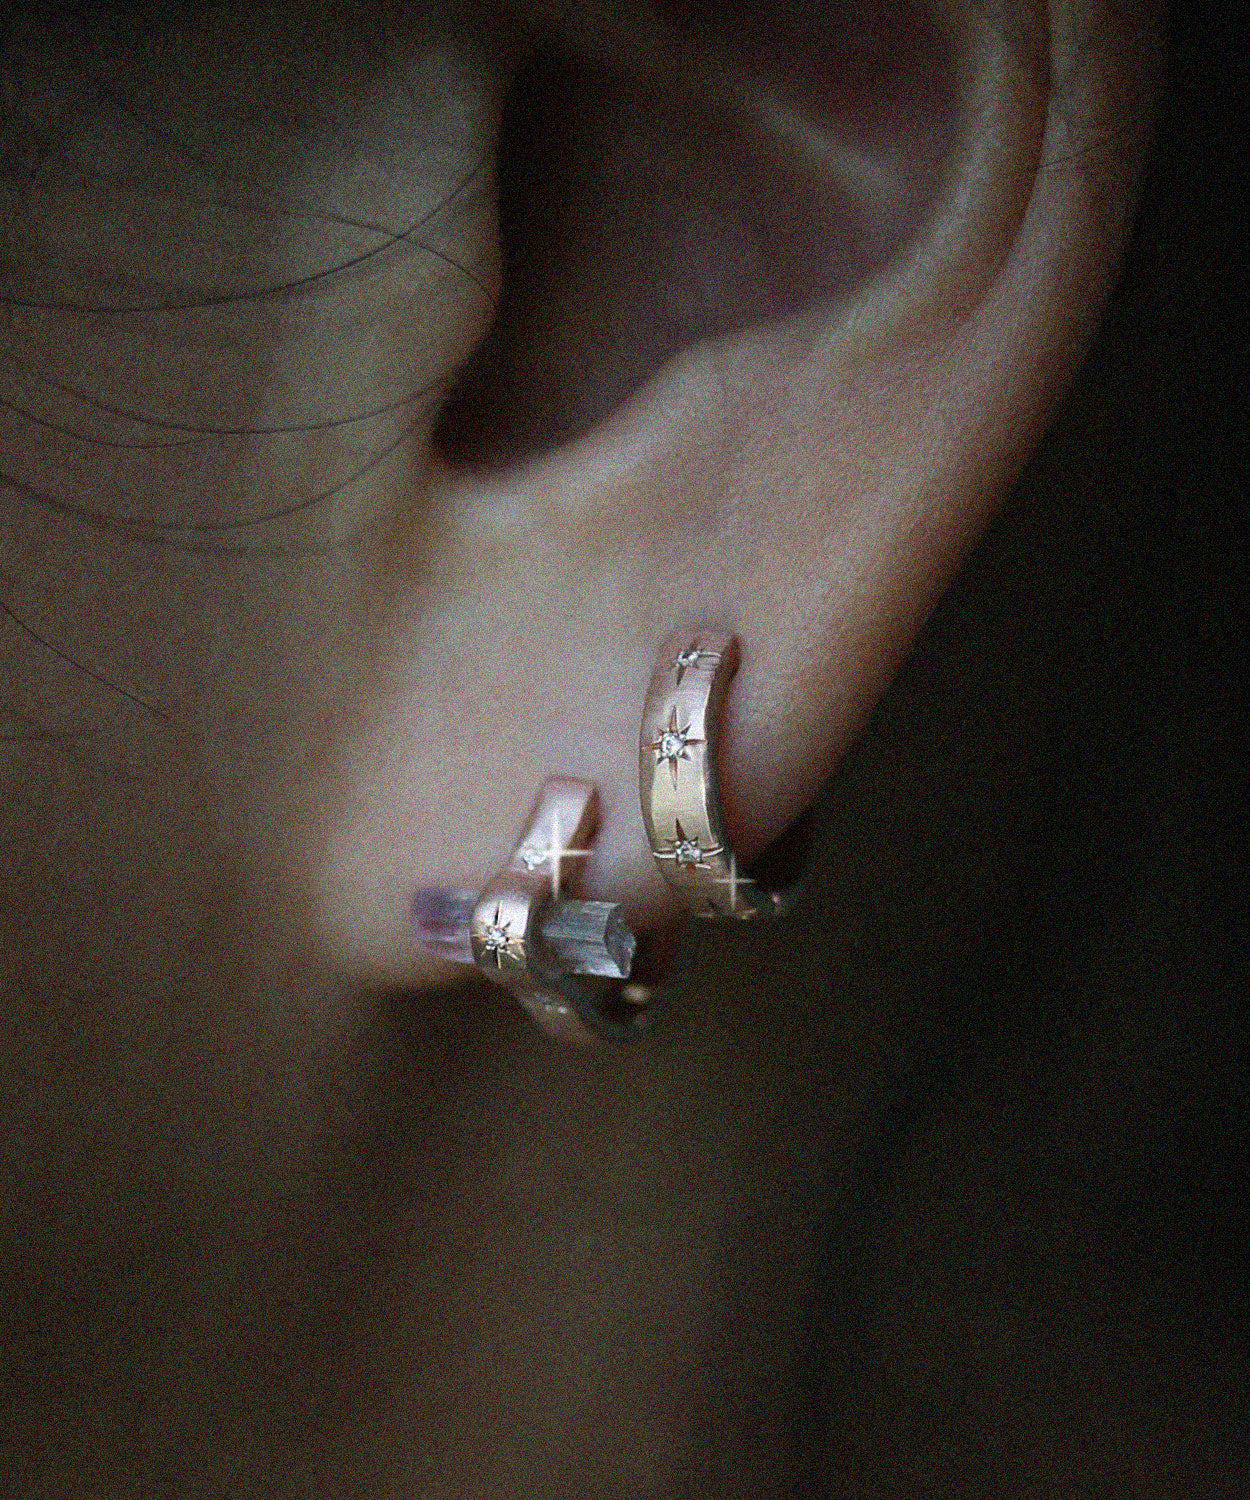 Pink Crystal Hoop Earring